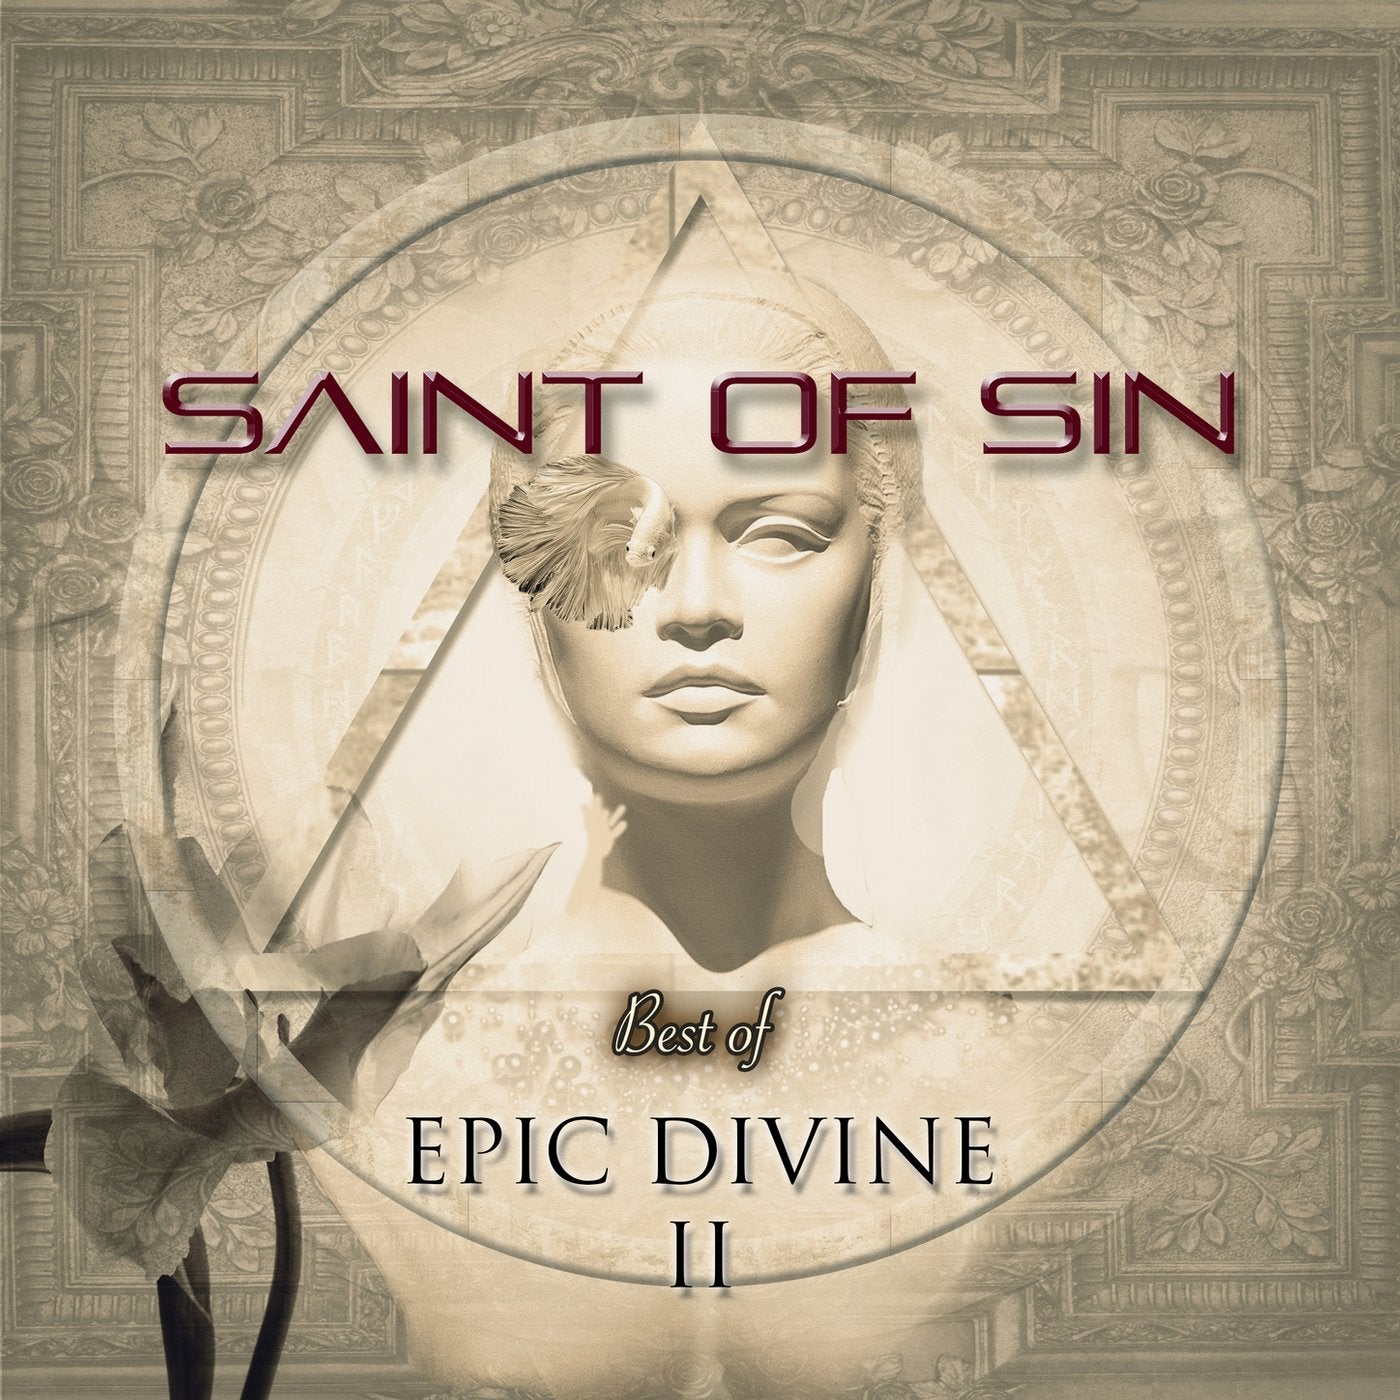 Best of Epic Divine II